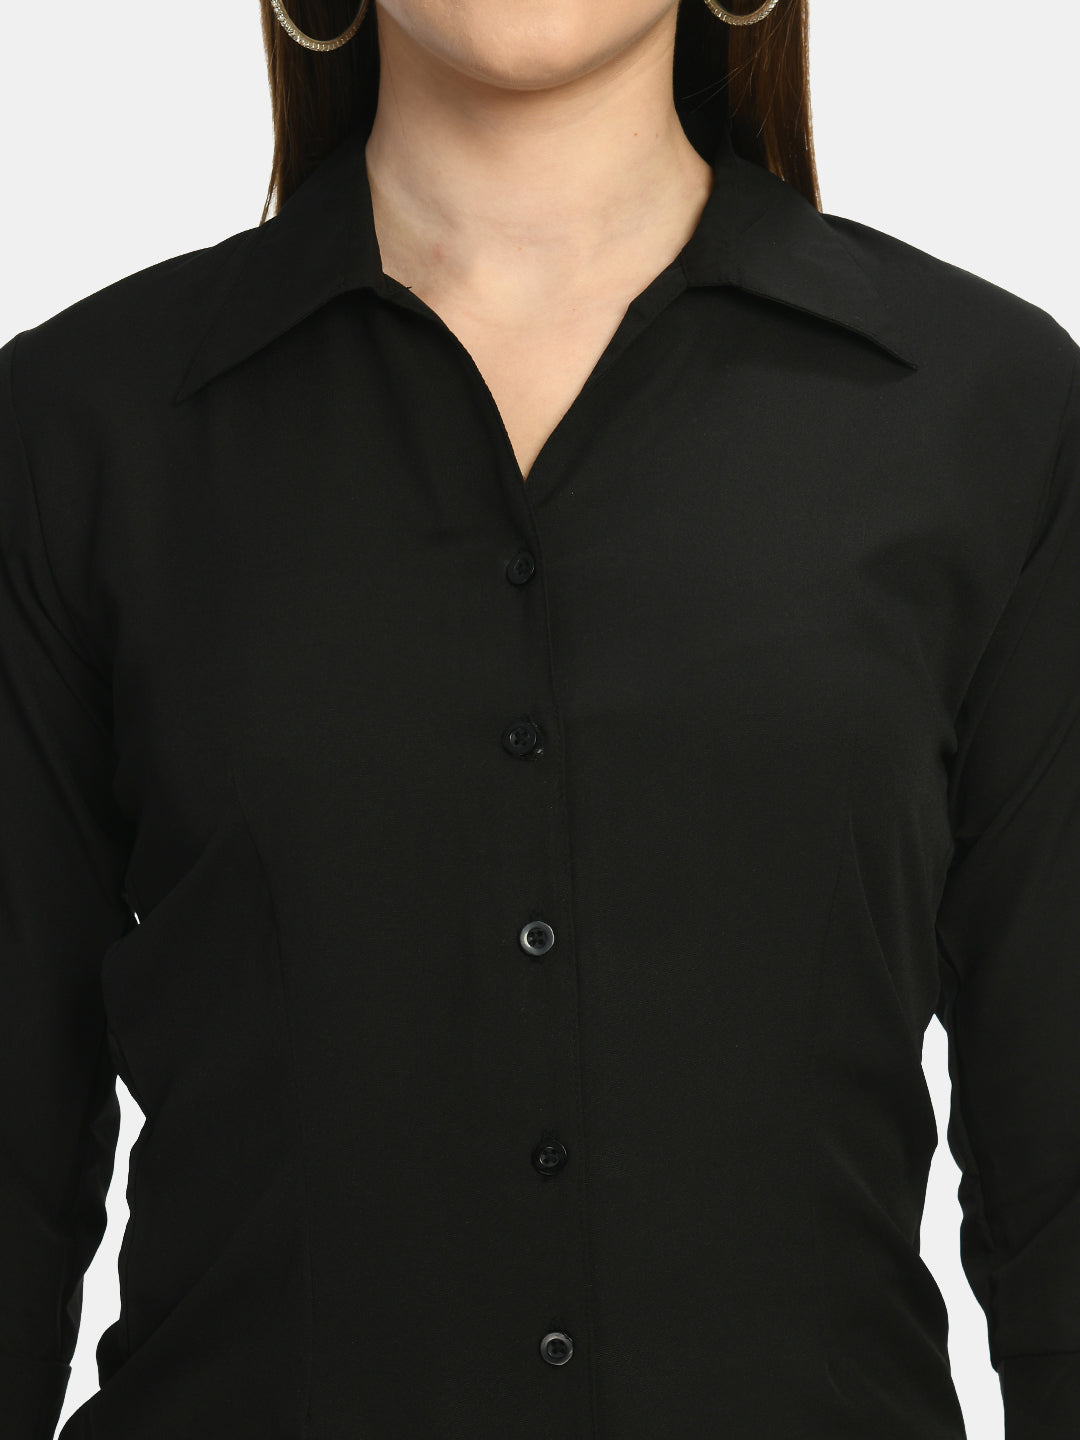 Women's Black Formal Shirt - Wahe-Noor